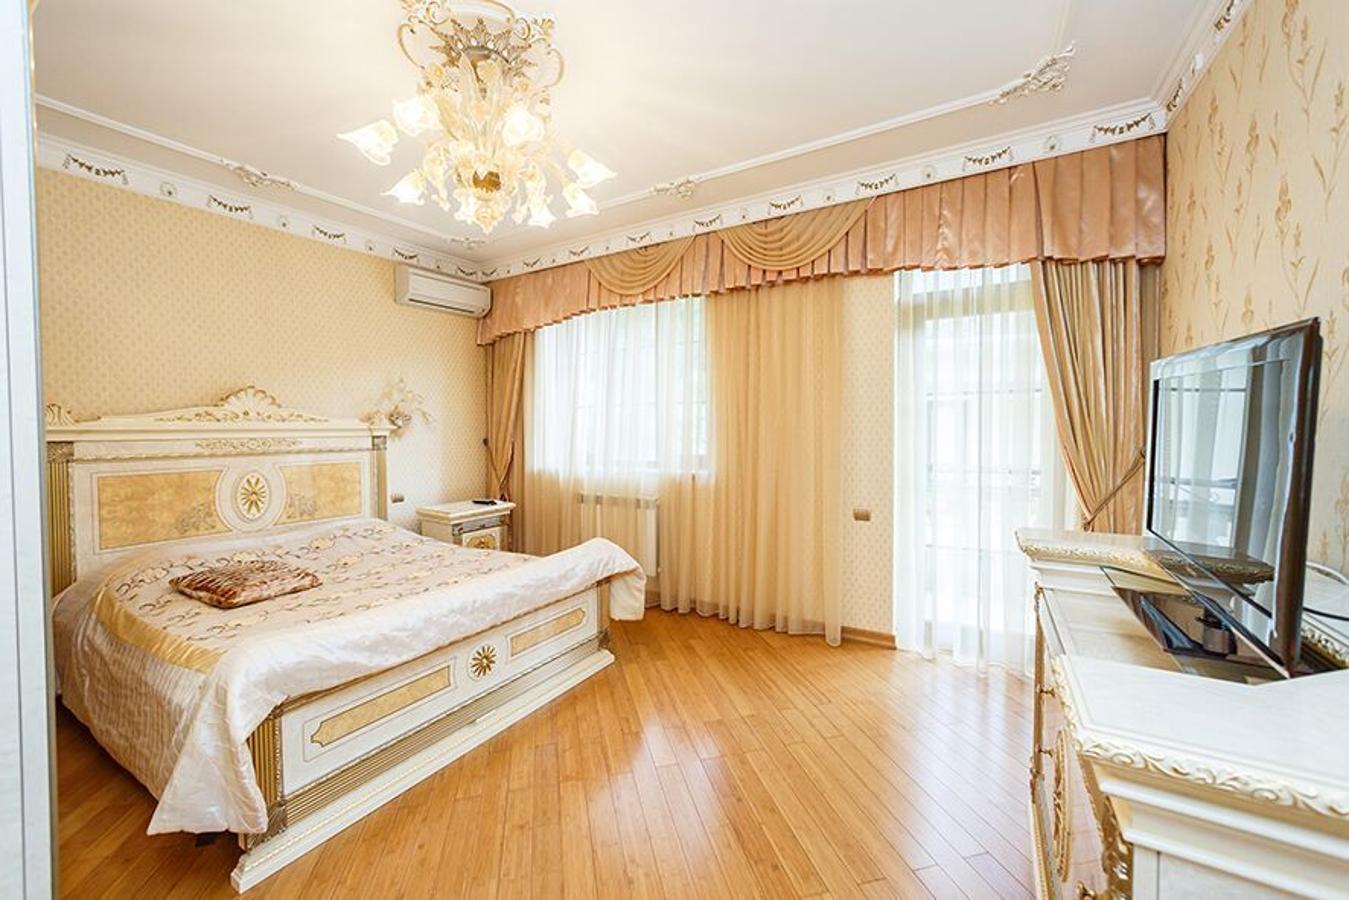 Sochi. Las estancias están decoradas con gusto señorial, el dorado y el blanco son los colores que destacan sobre los demás, un estilo muy propio de la región